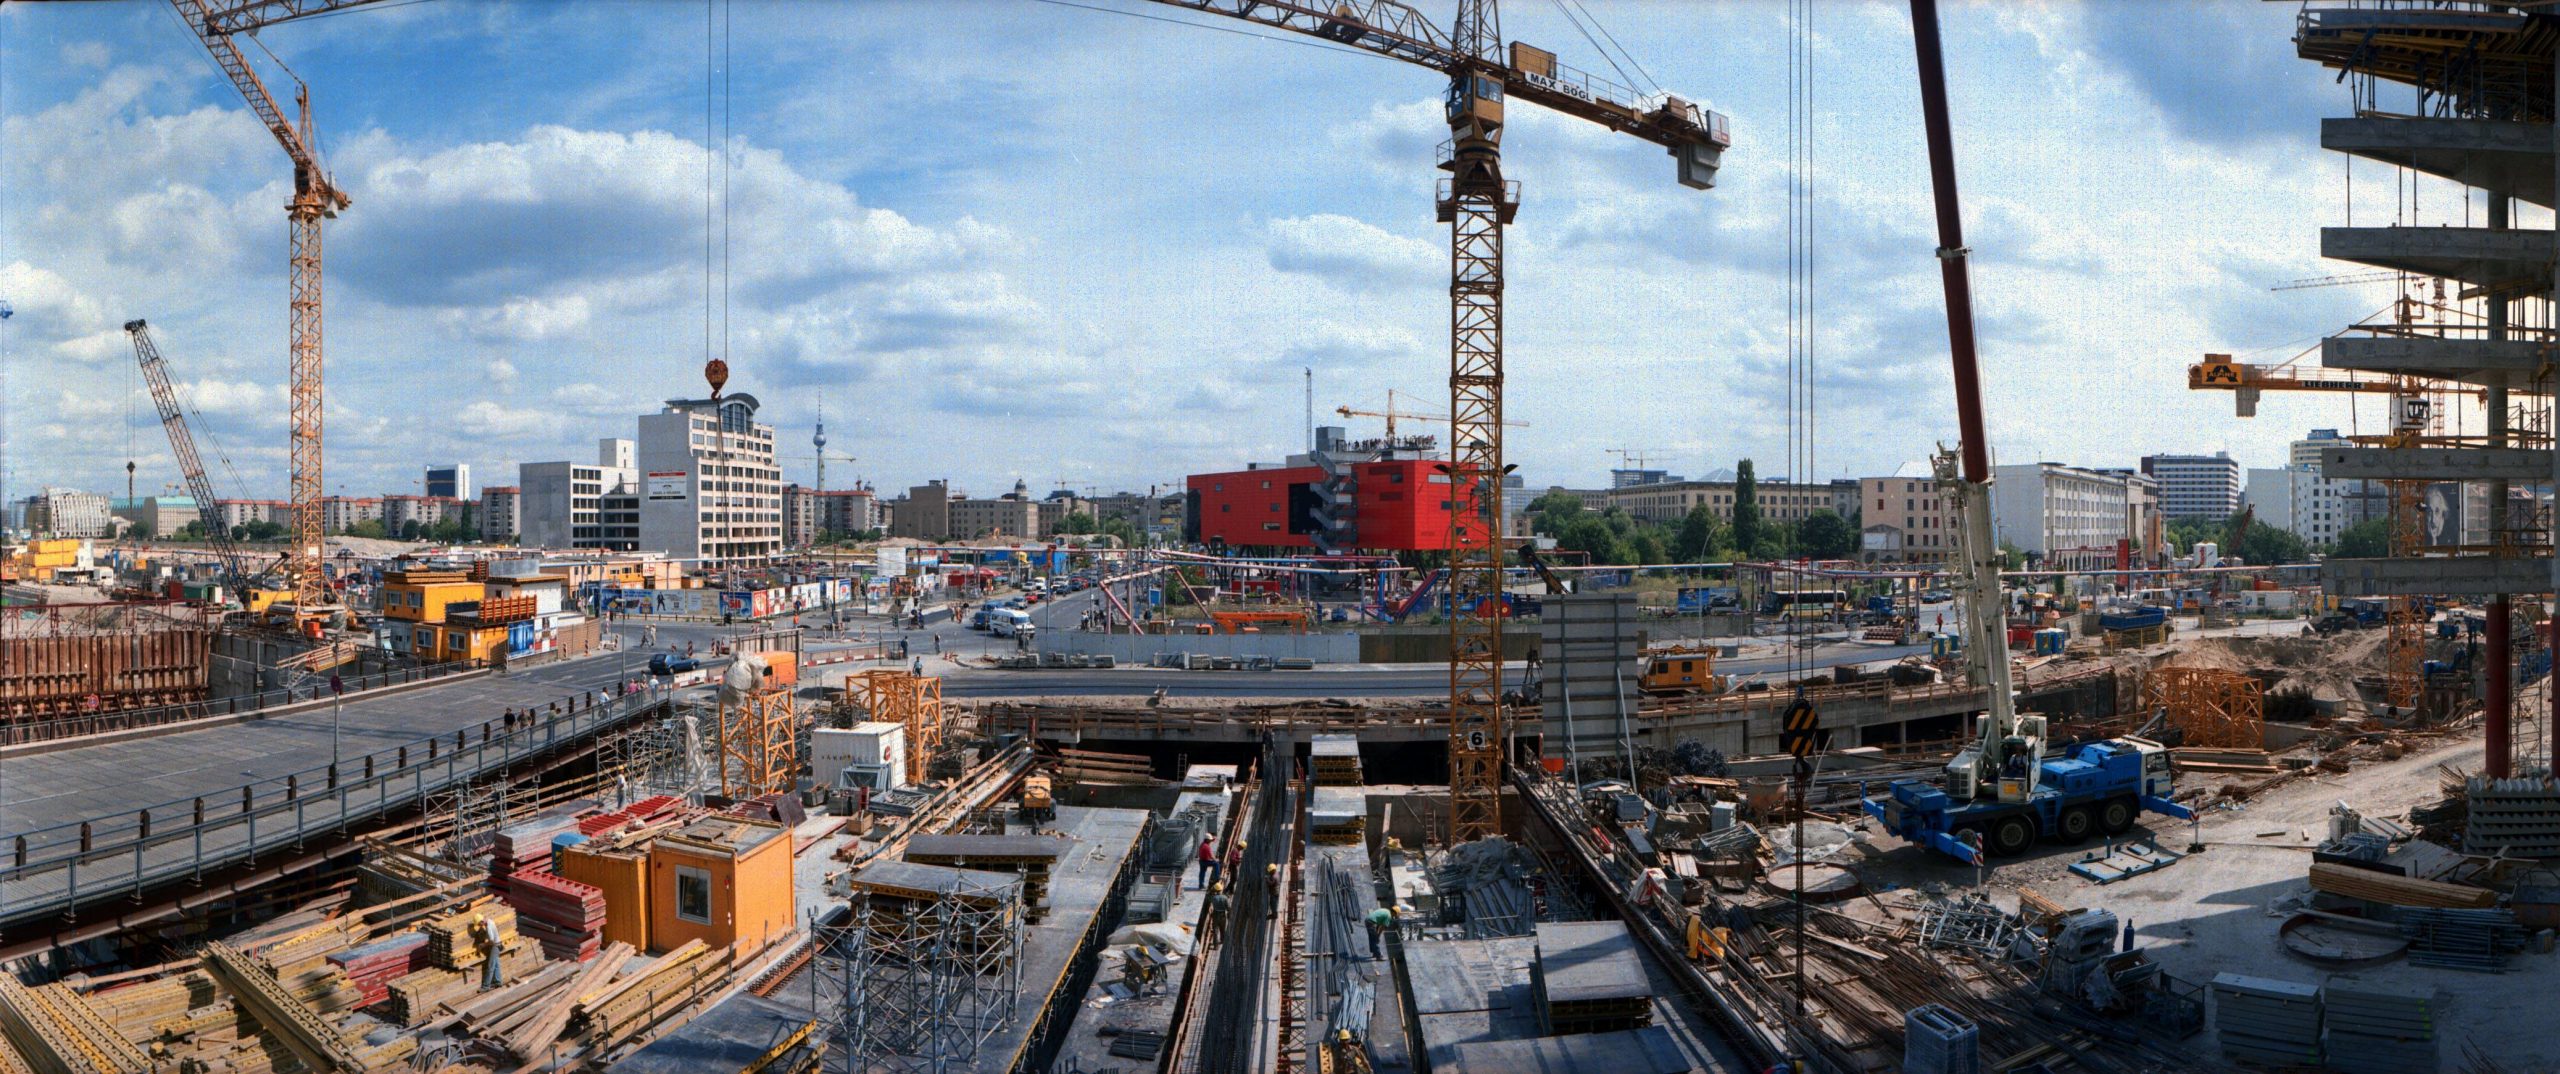 Der Potsdamer Platz galt in den 1990er-Jahren als das gewaltigste Bauvorhaben in Berlin seit Jahrzehnten und war seinerzeit die größte Baustelle in Europa. 